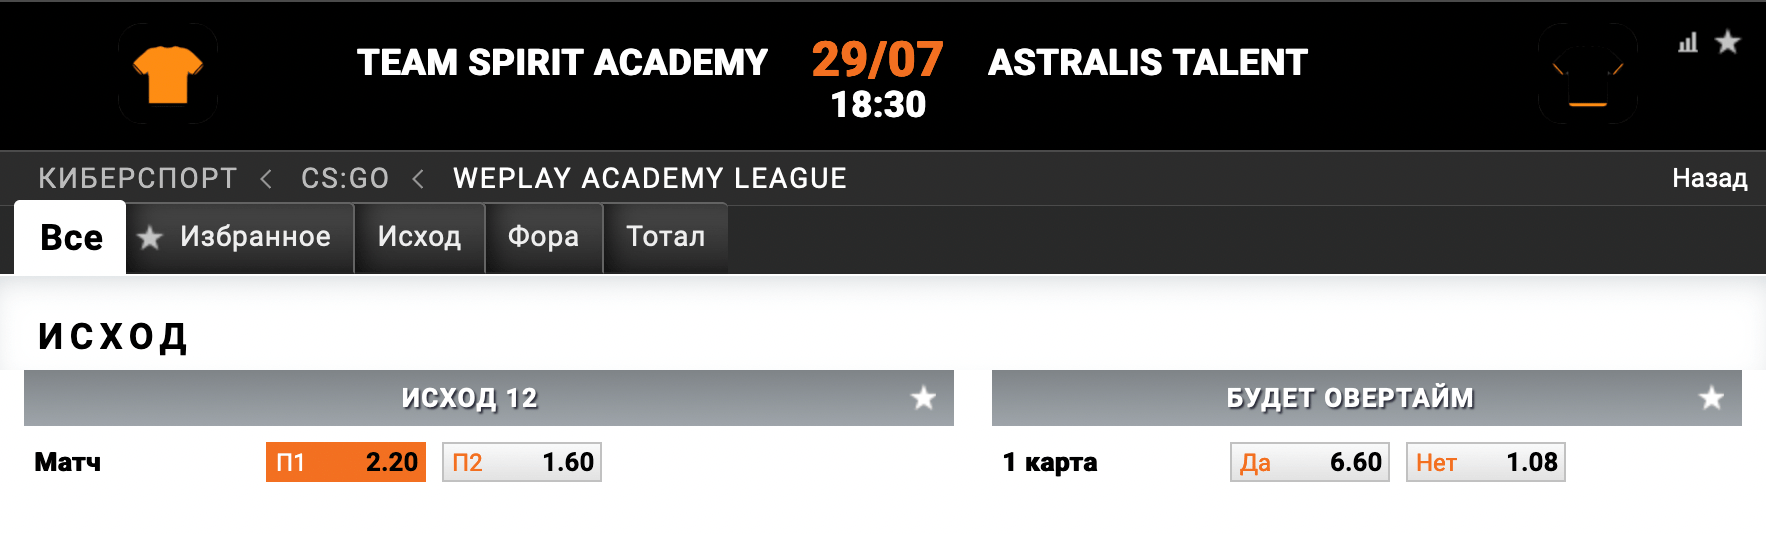 Spirit Academy – Astralis Talent. Прогноз на матч одной из лучших академий в СНГ